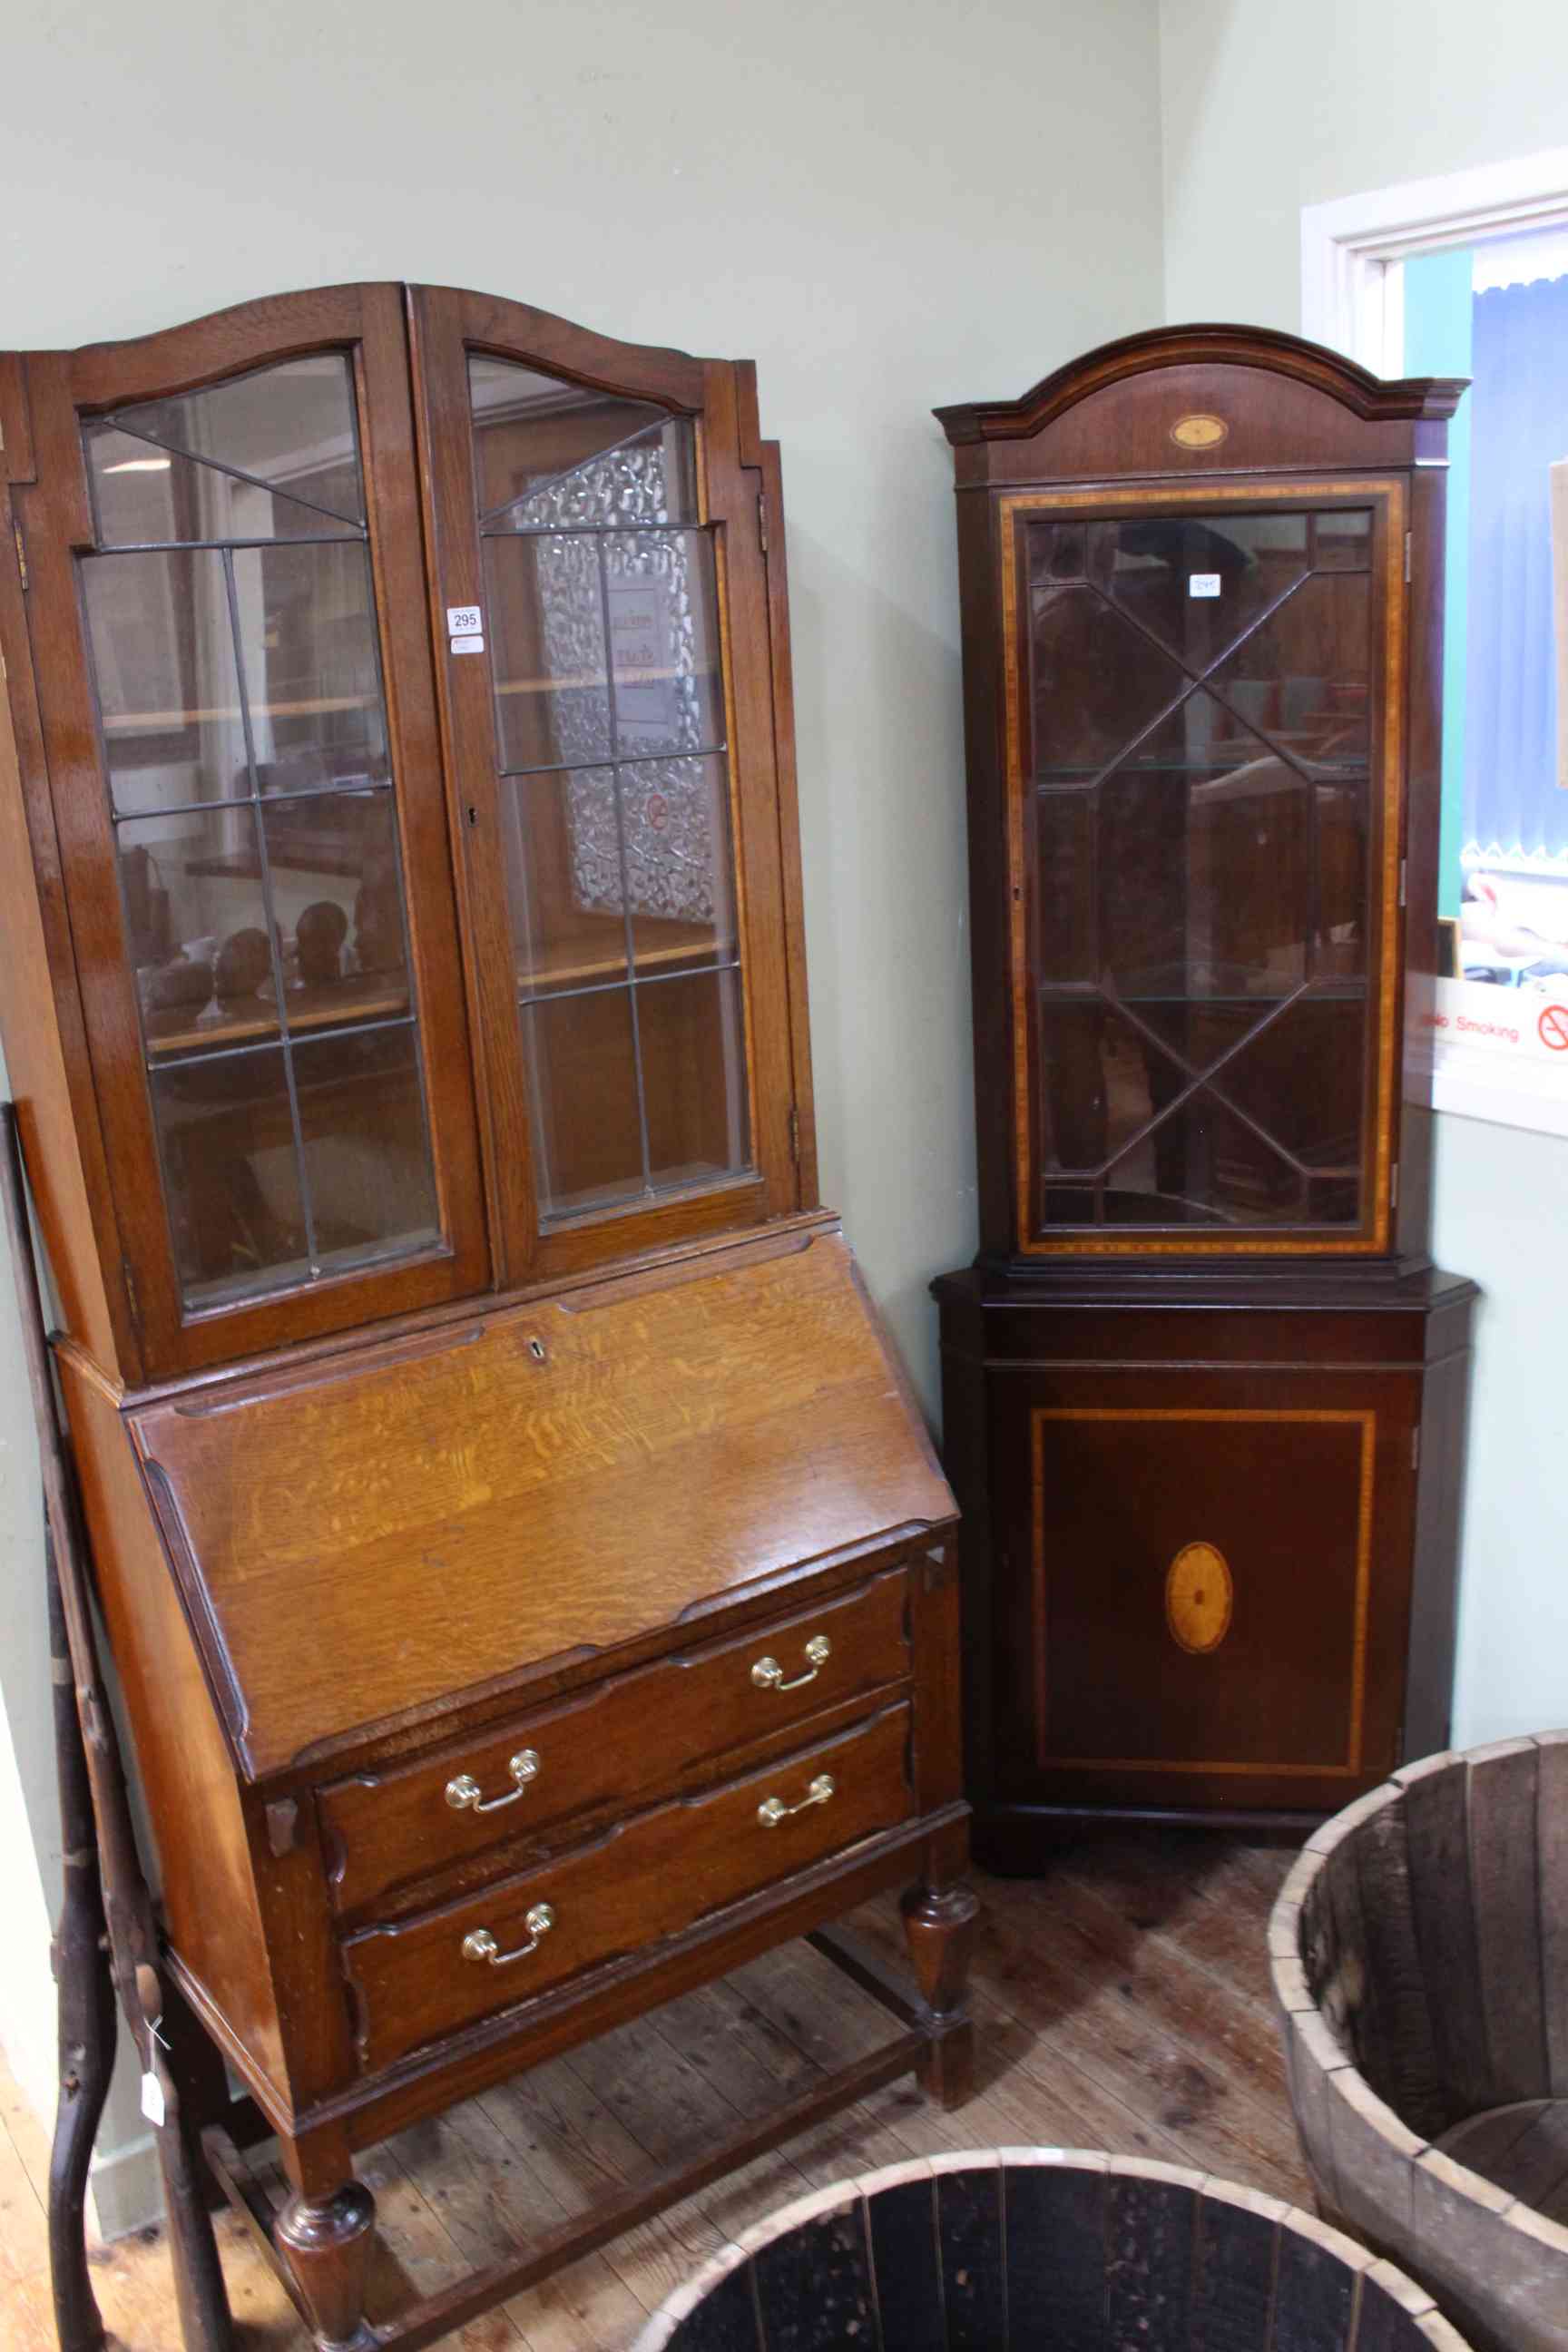 Oak leaded glazed door top bureau bookcase and inlaid mahogany astragal glazed door top standing